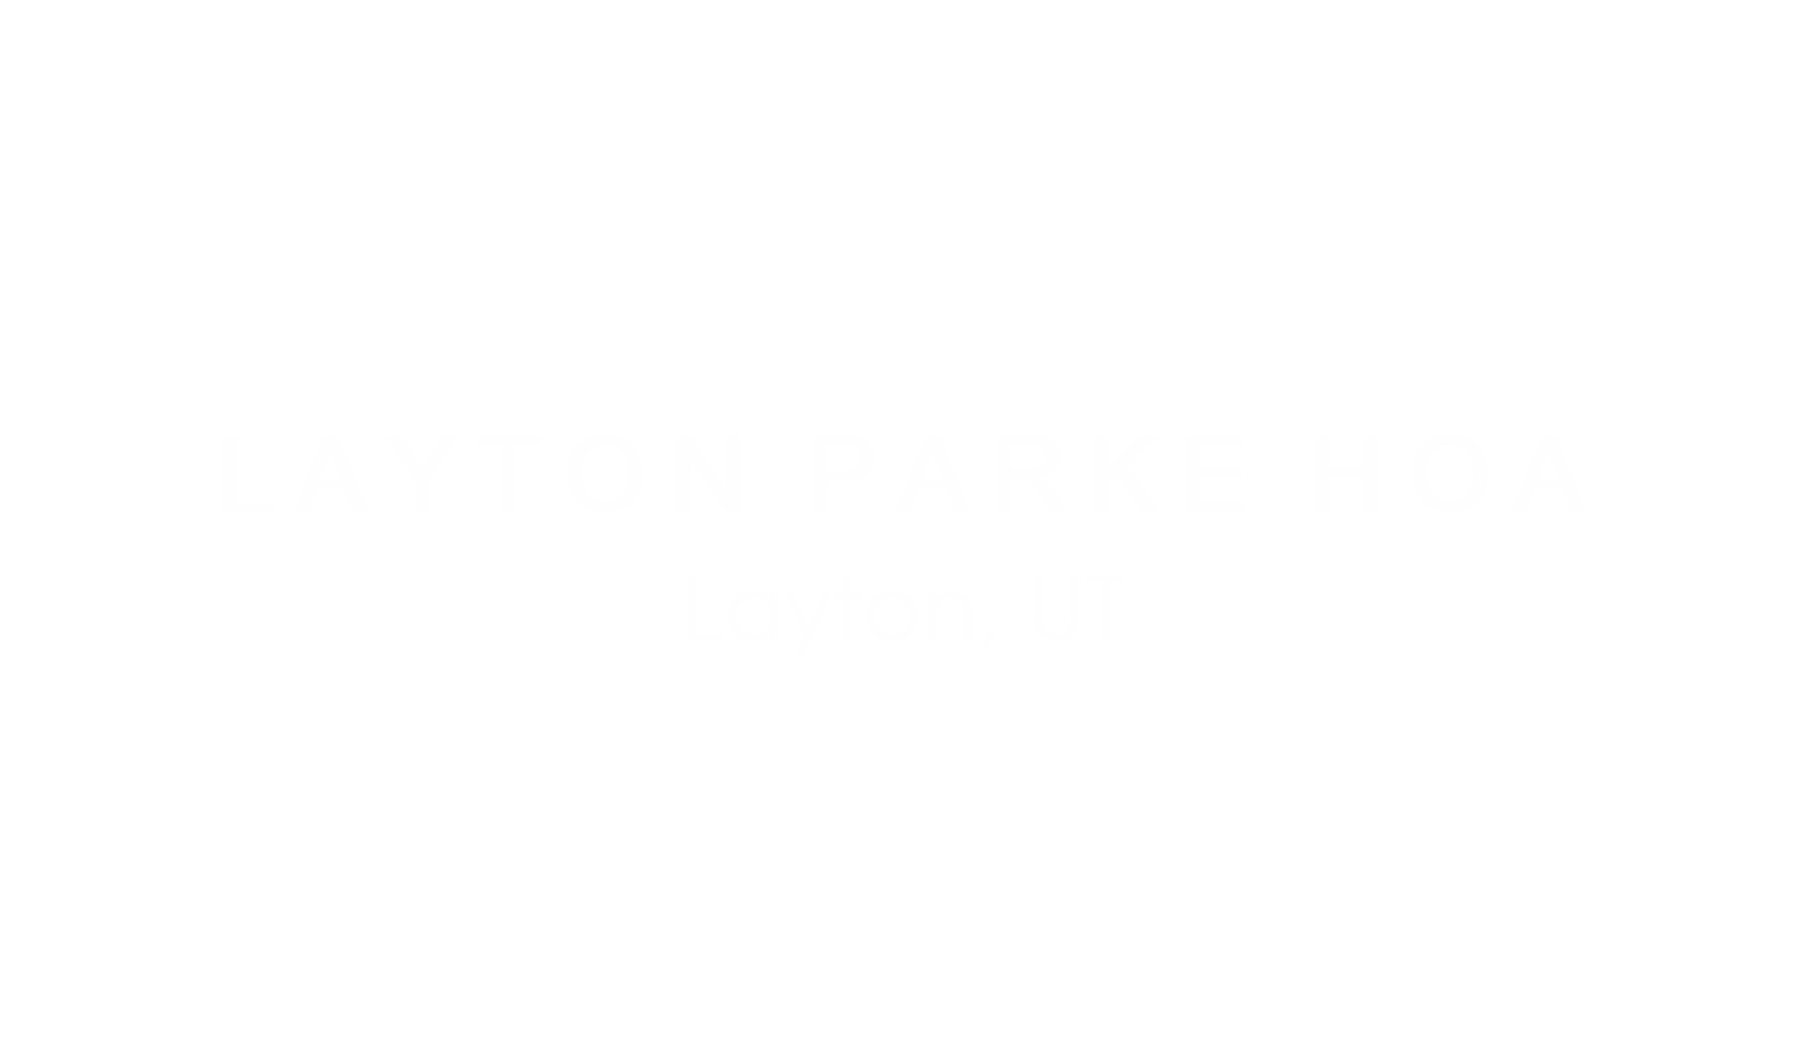 Layton Parke